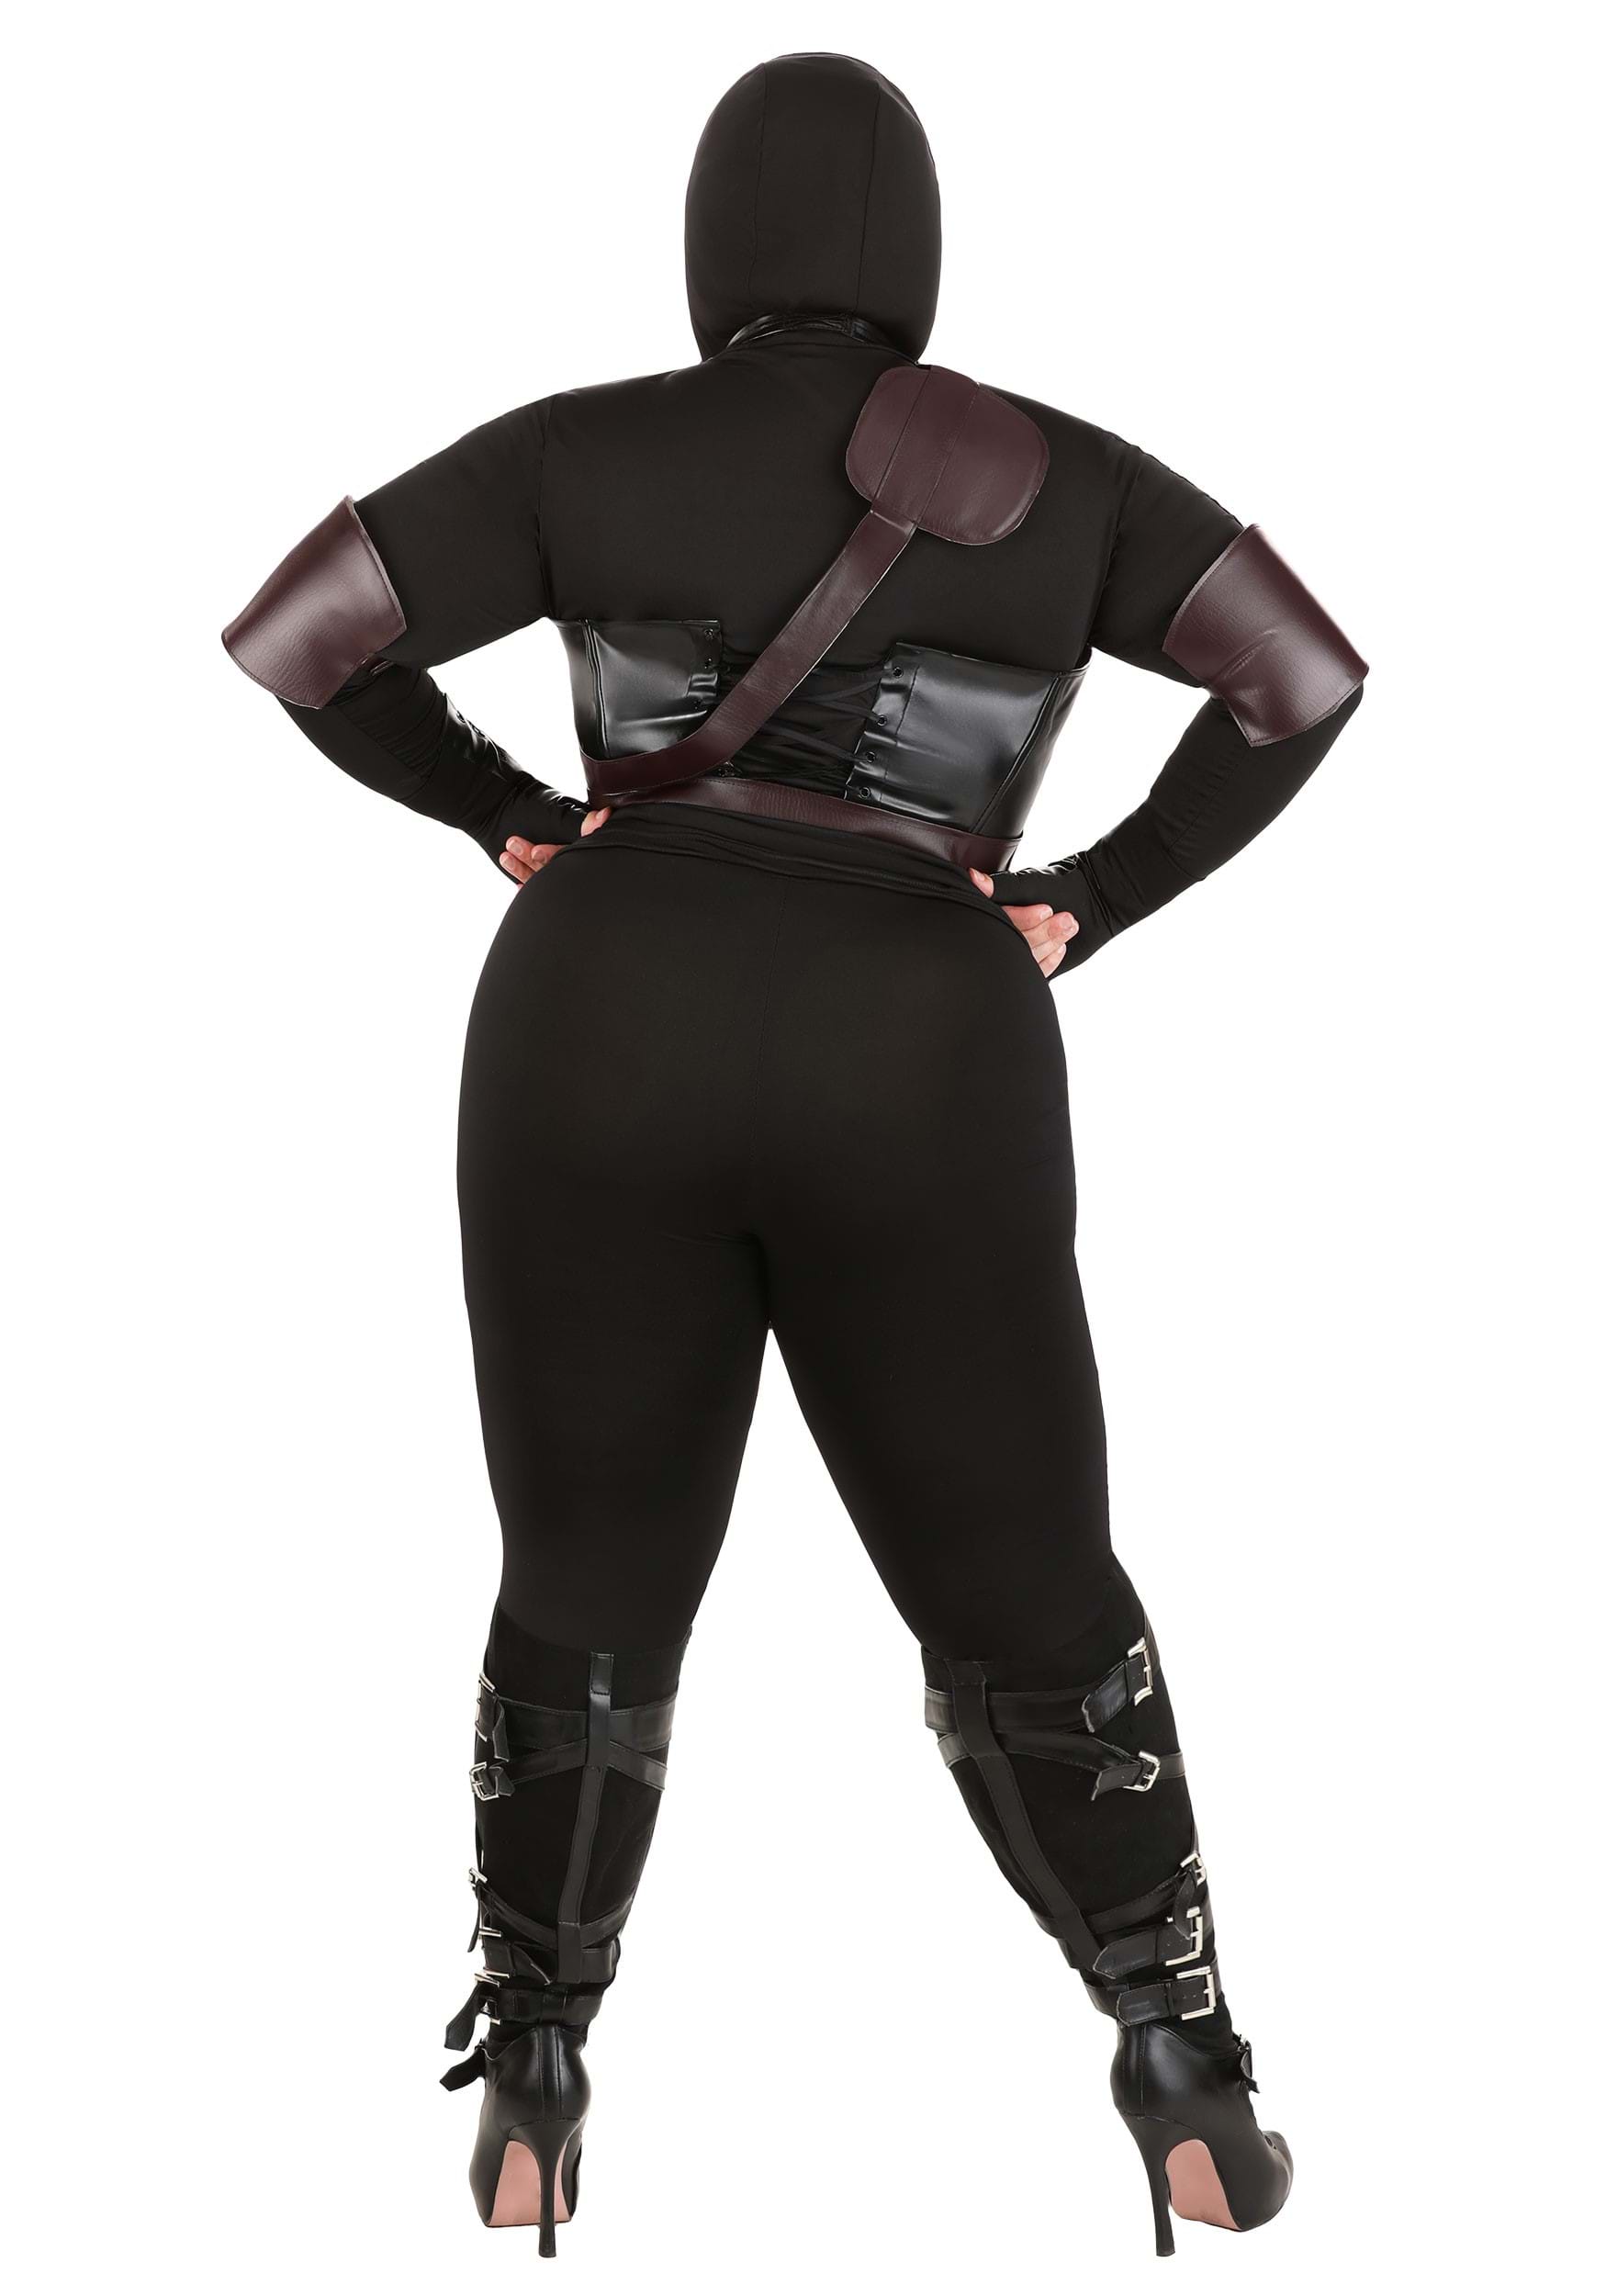 Plus Size Women's Ninja Assassin Fancy Dress Costume